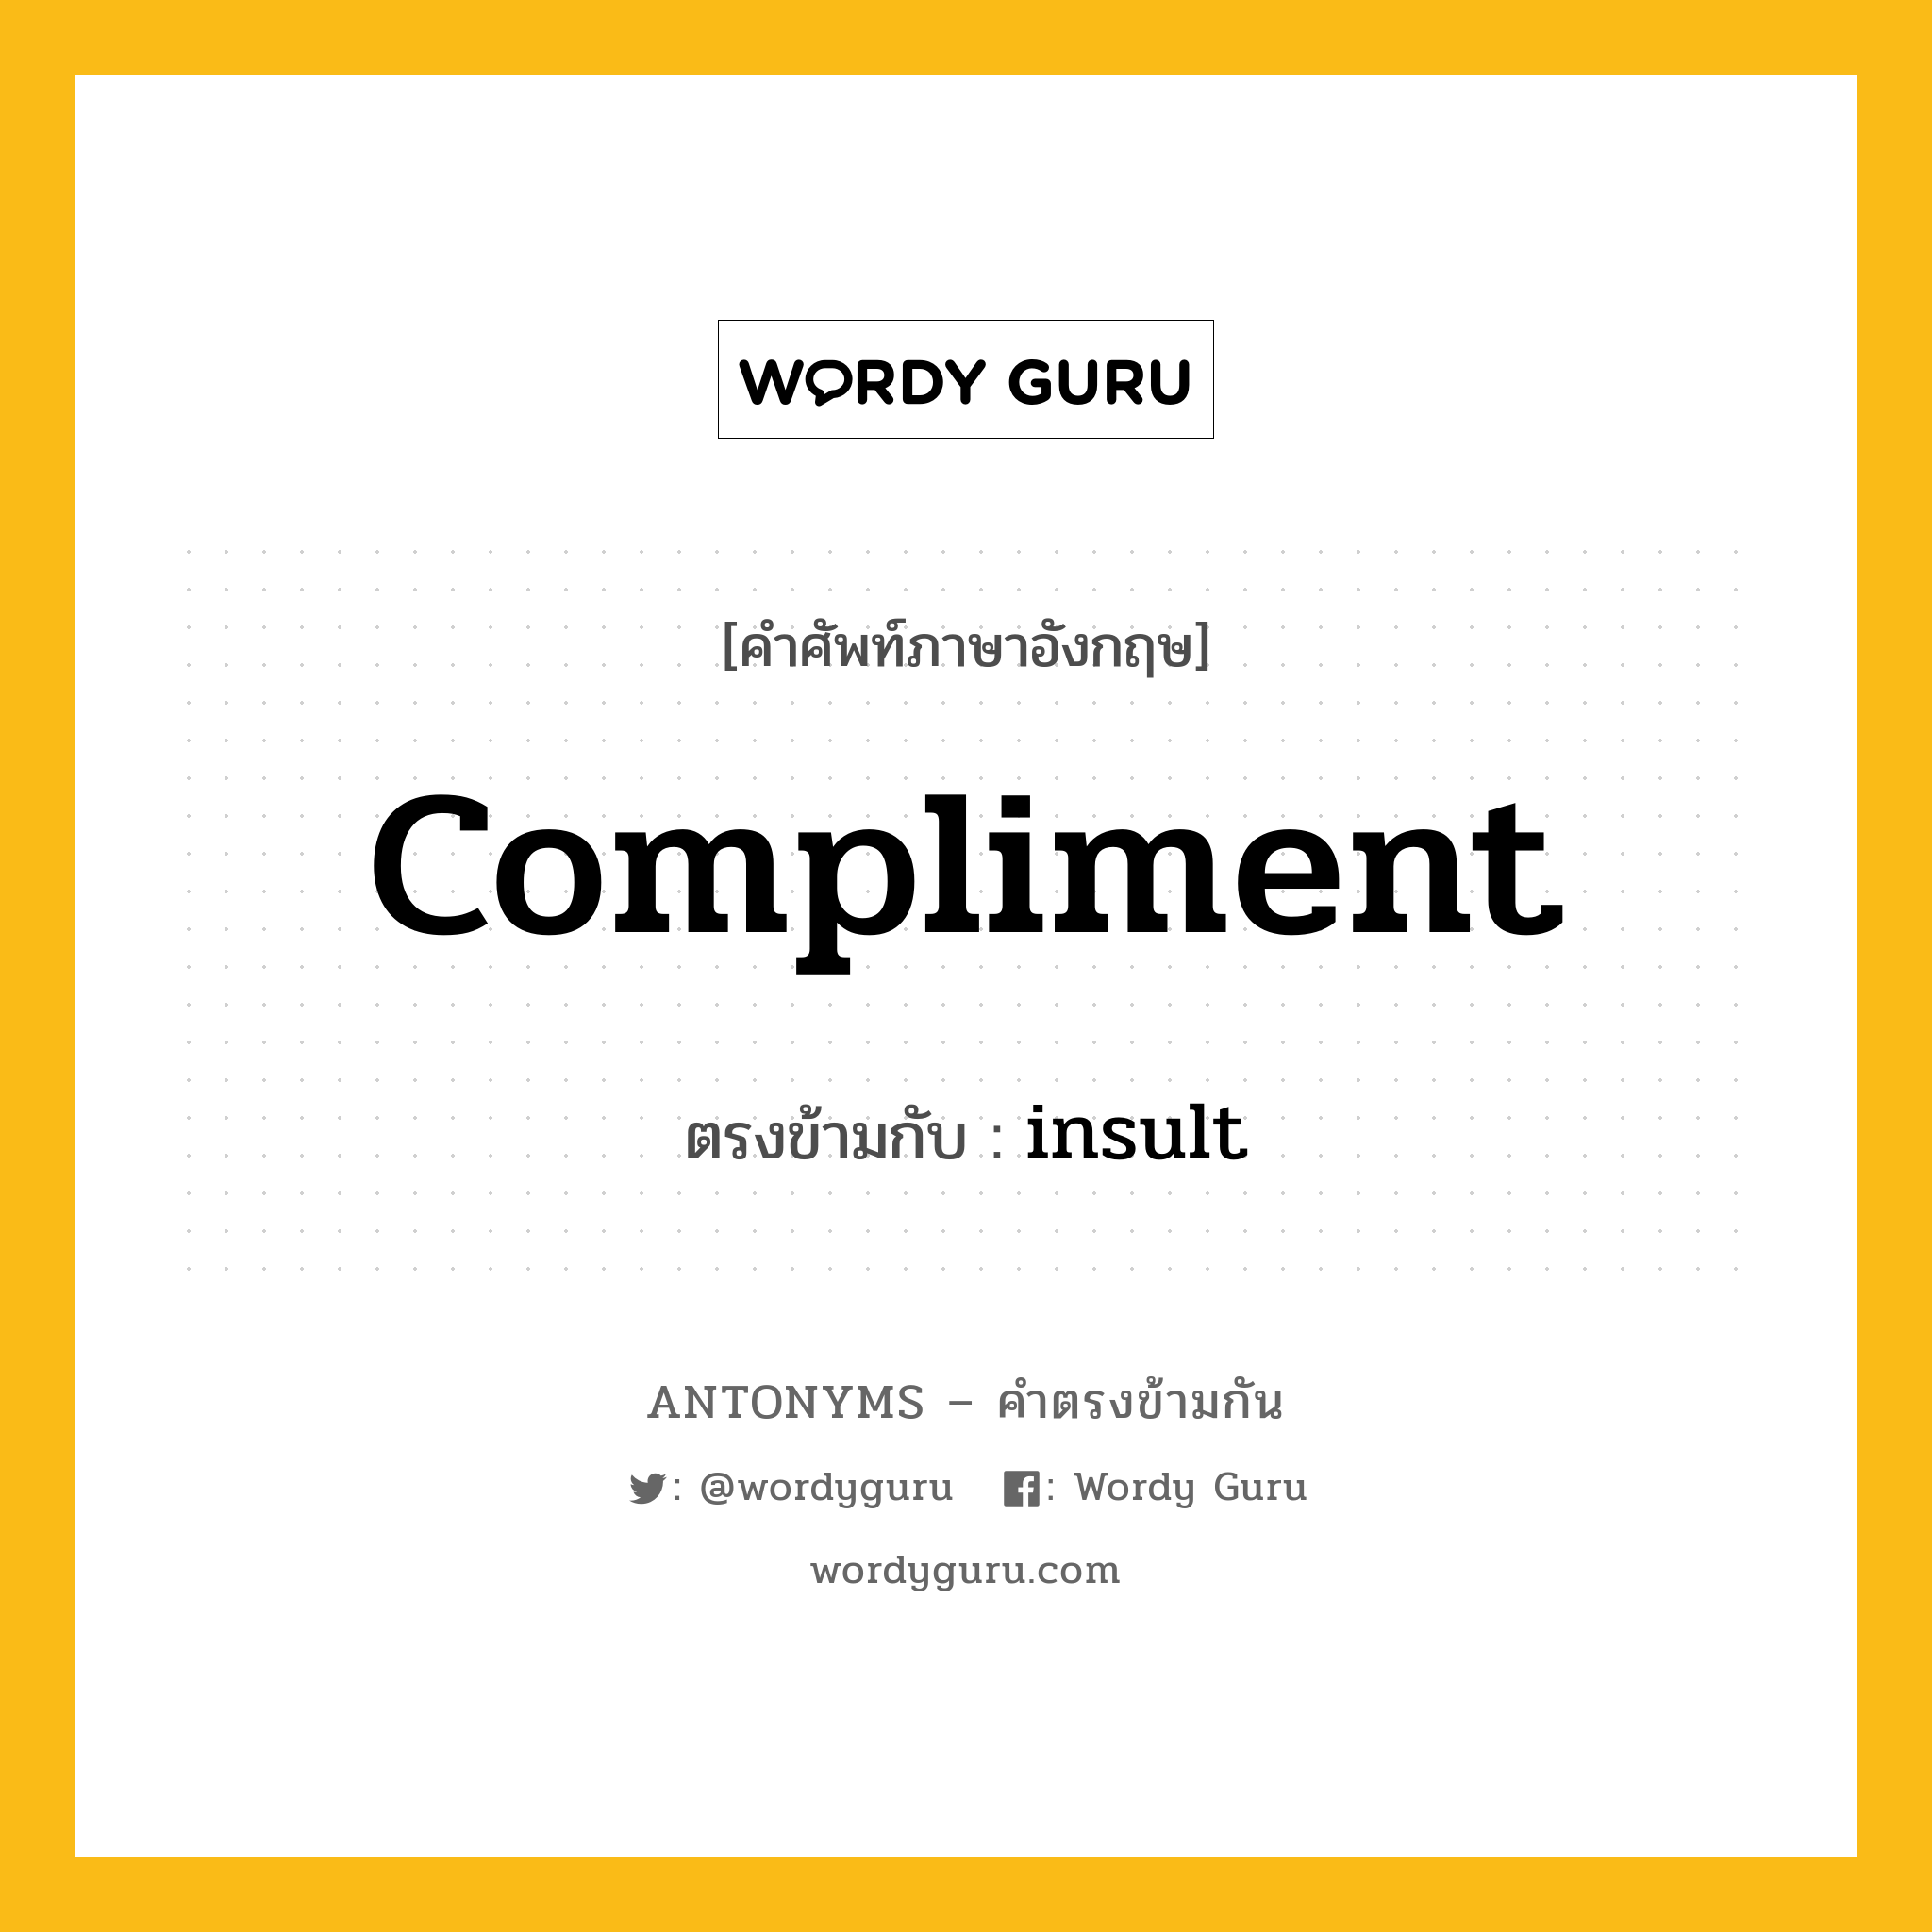 compliment เป็นคำตรงข้ามกับคำไหนบ้าง?, คำศัพท์ภาษาอังกฤษ compliment ตรงข้ามกับ insult หมวด insult